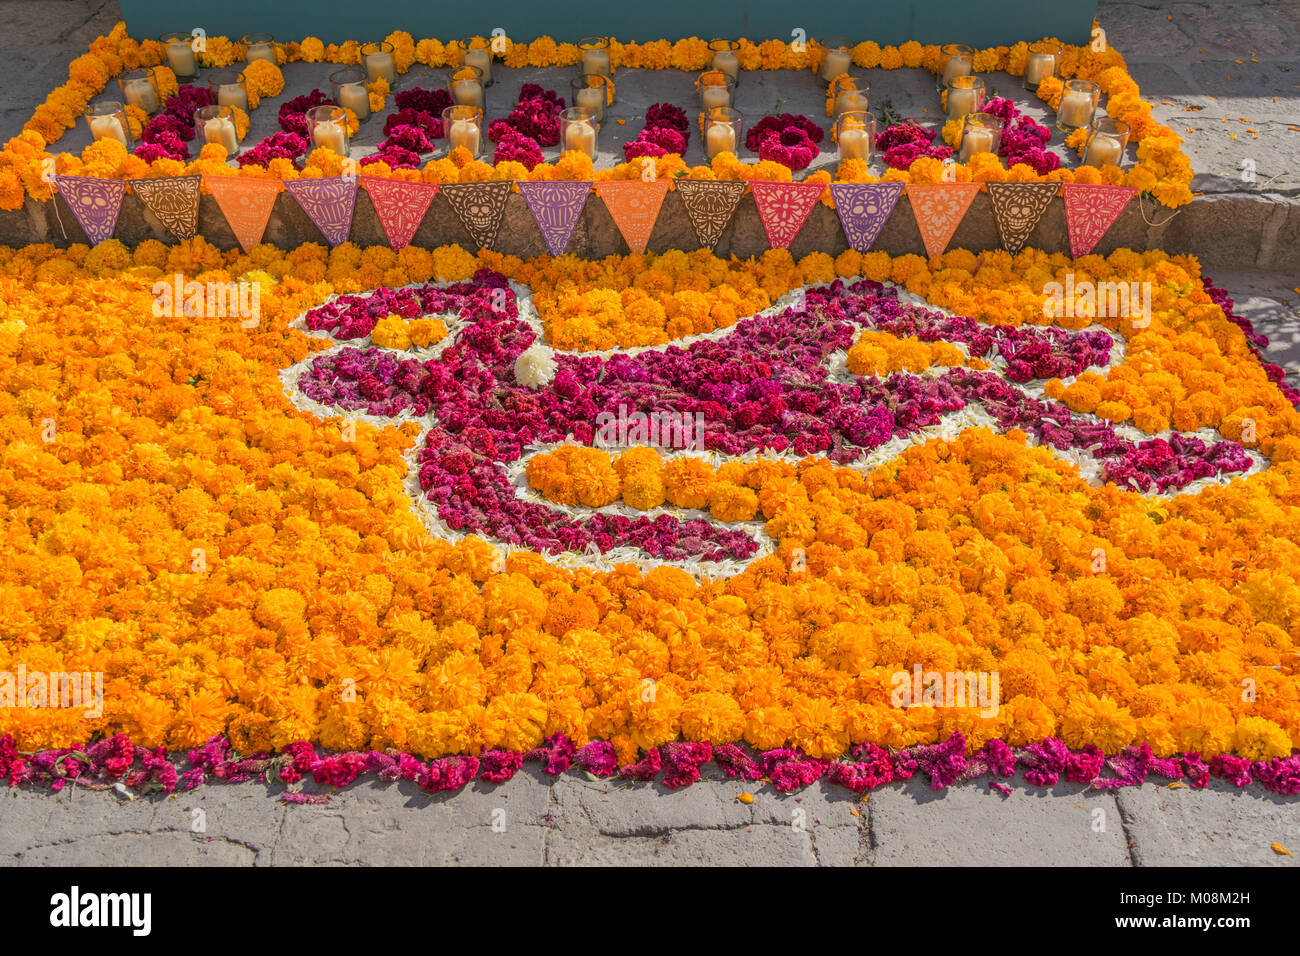 Sur le terrain, un tableau de l'orange et le rouge des fleurs de souci dans la forme d'un corps pour le Jour des morts célébration en San Miguel de Allende, Mexique Banque D'Images